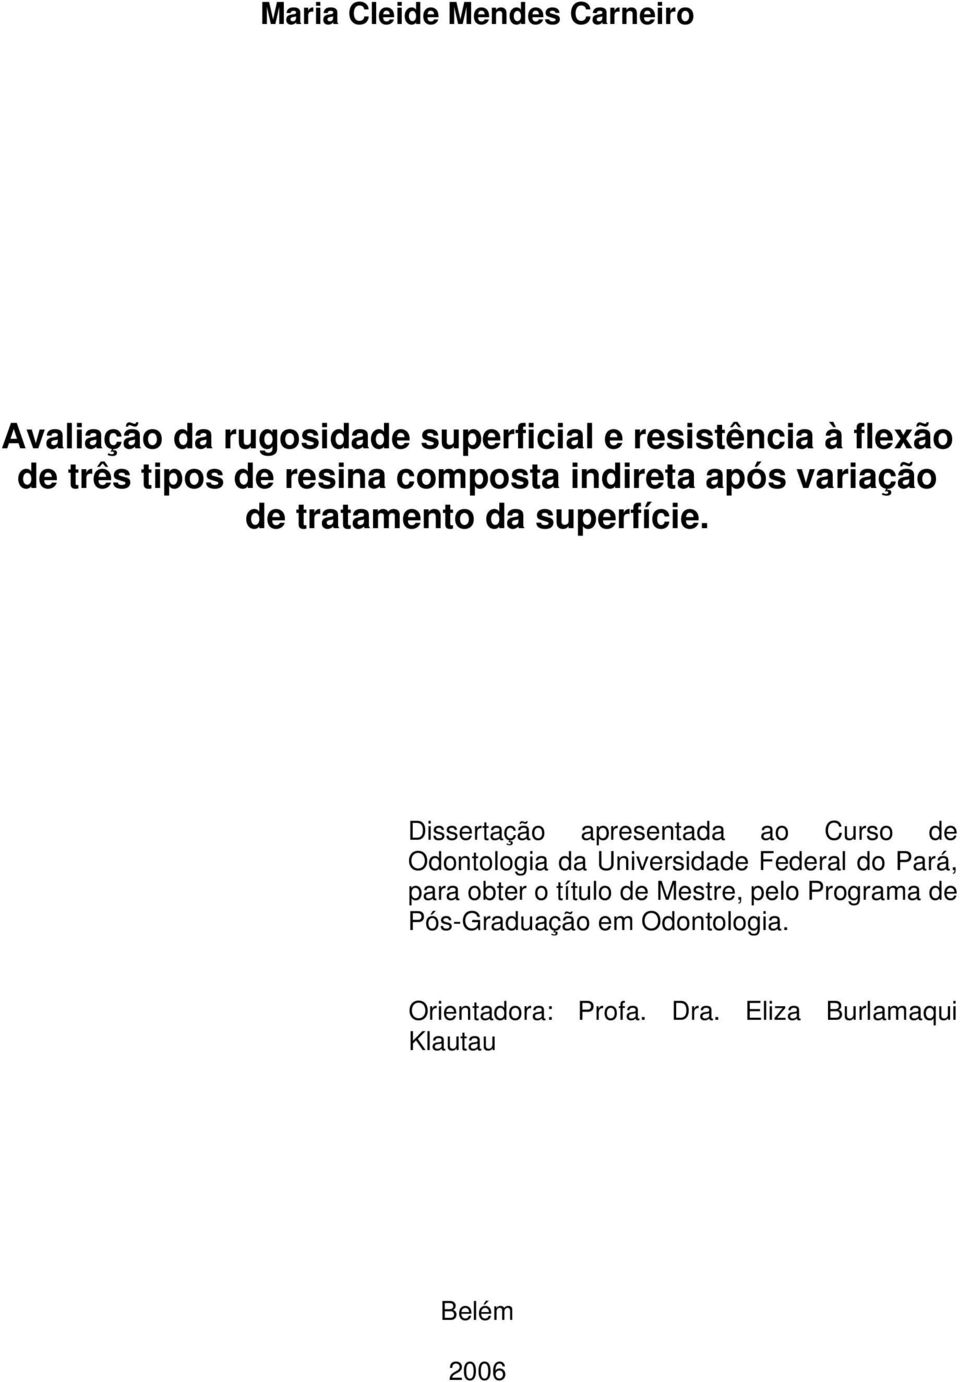 Dissertação apresentada ao Curso de Odontologia da Universidade Federal do Pará, para obter o